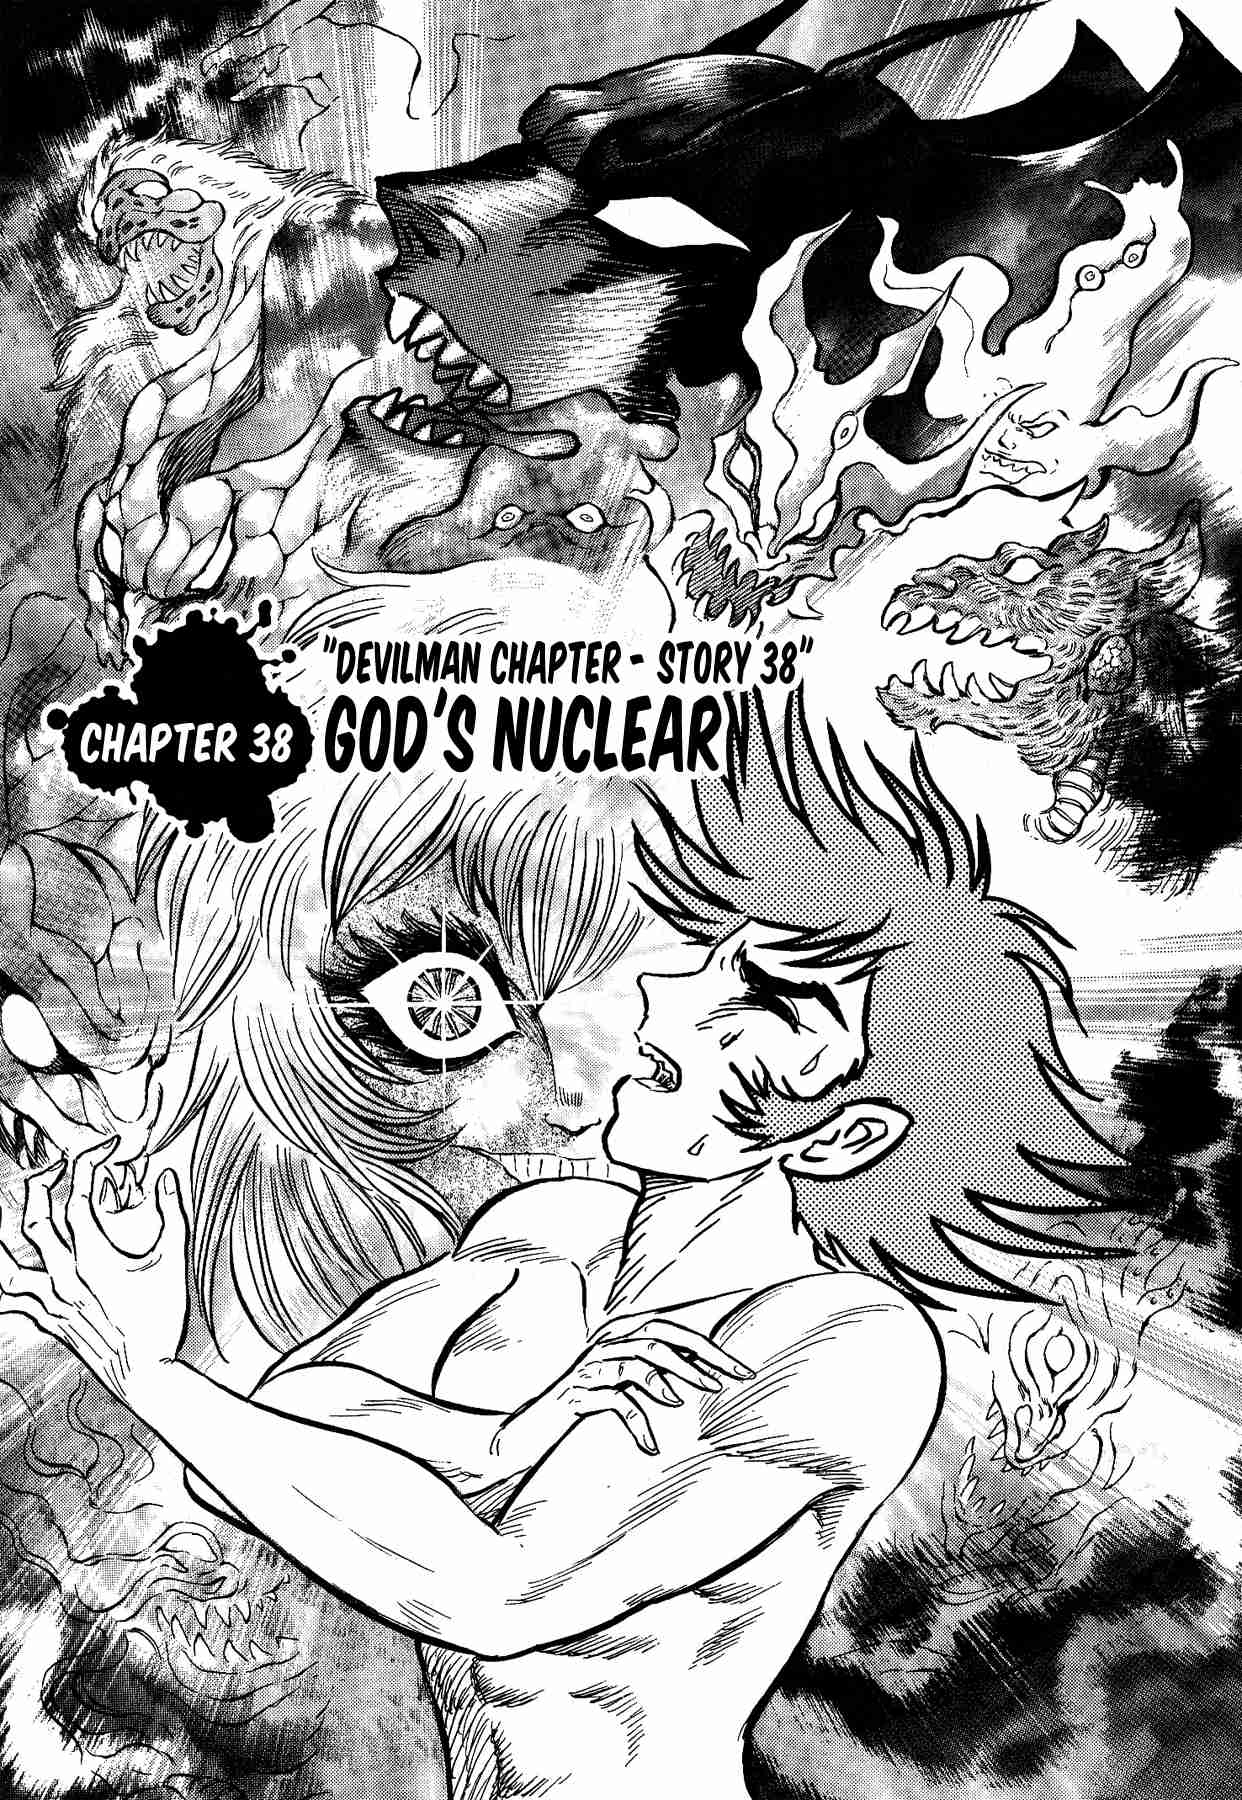 Gekiman! Devilman Chapter Vol. 5 Ch. 38 God's Nuclear